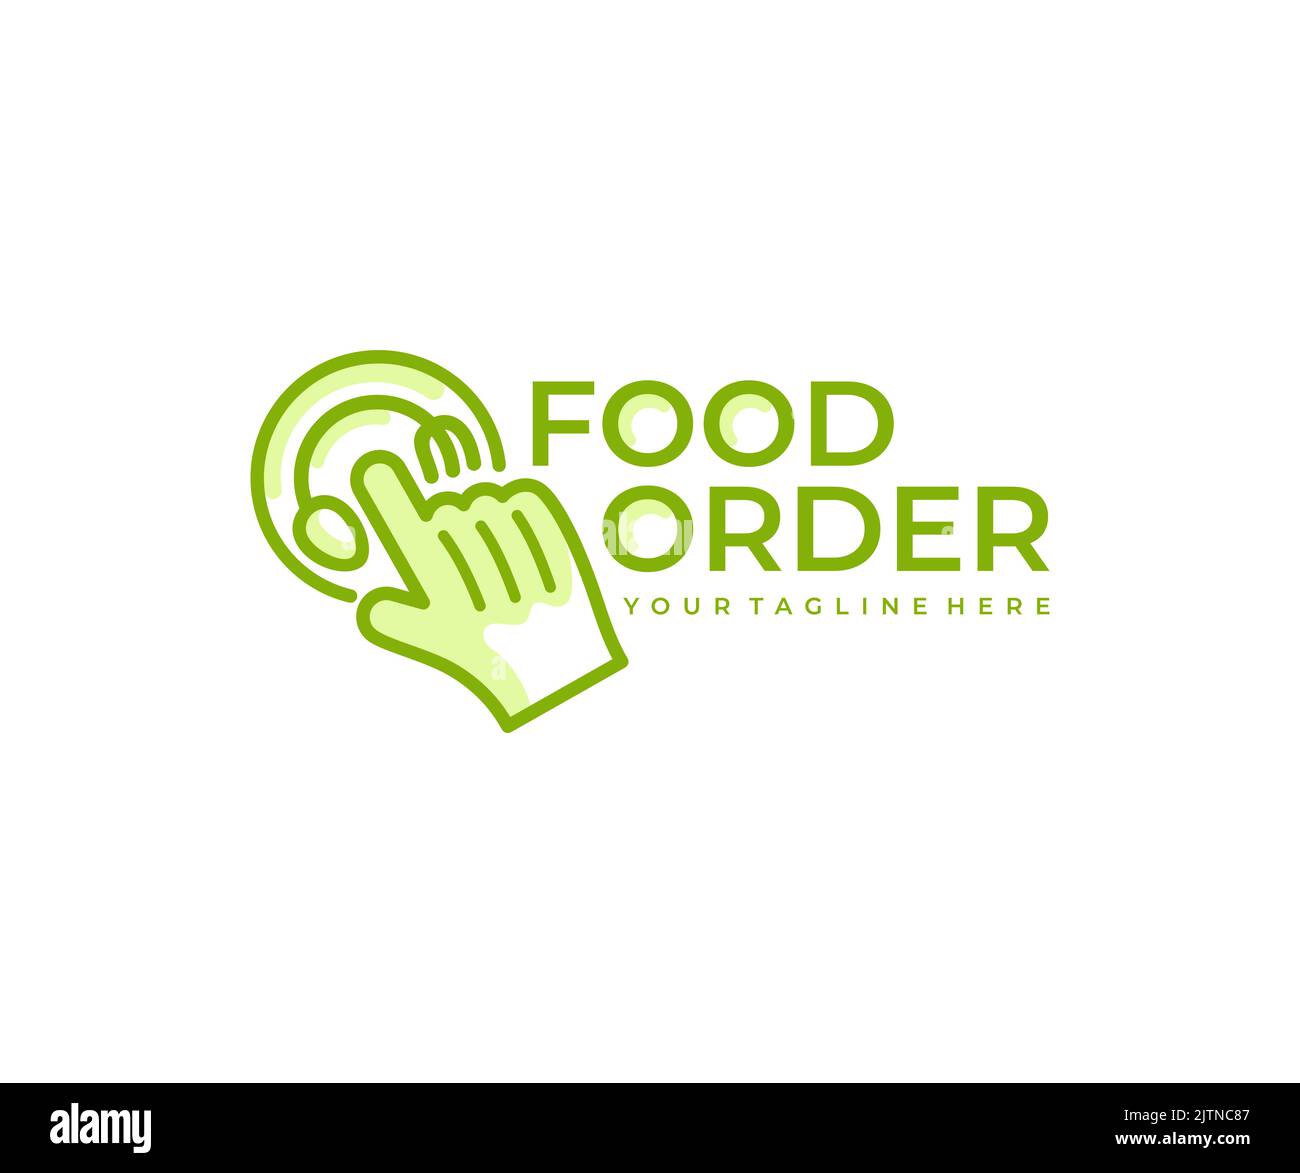 Commande de nourriture ou commande de nourriture, nourriture en ligne et livraison, logo. Nourriture, repas, nourriture à emporter, dessin vectoriel et illustration Illustration de Vecteur